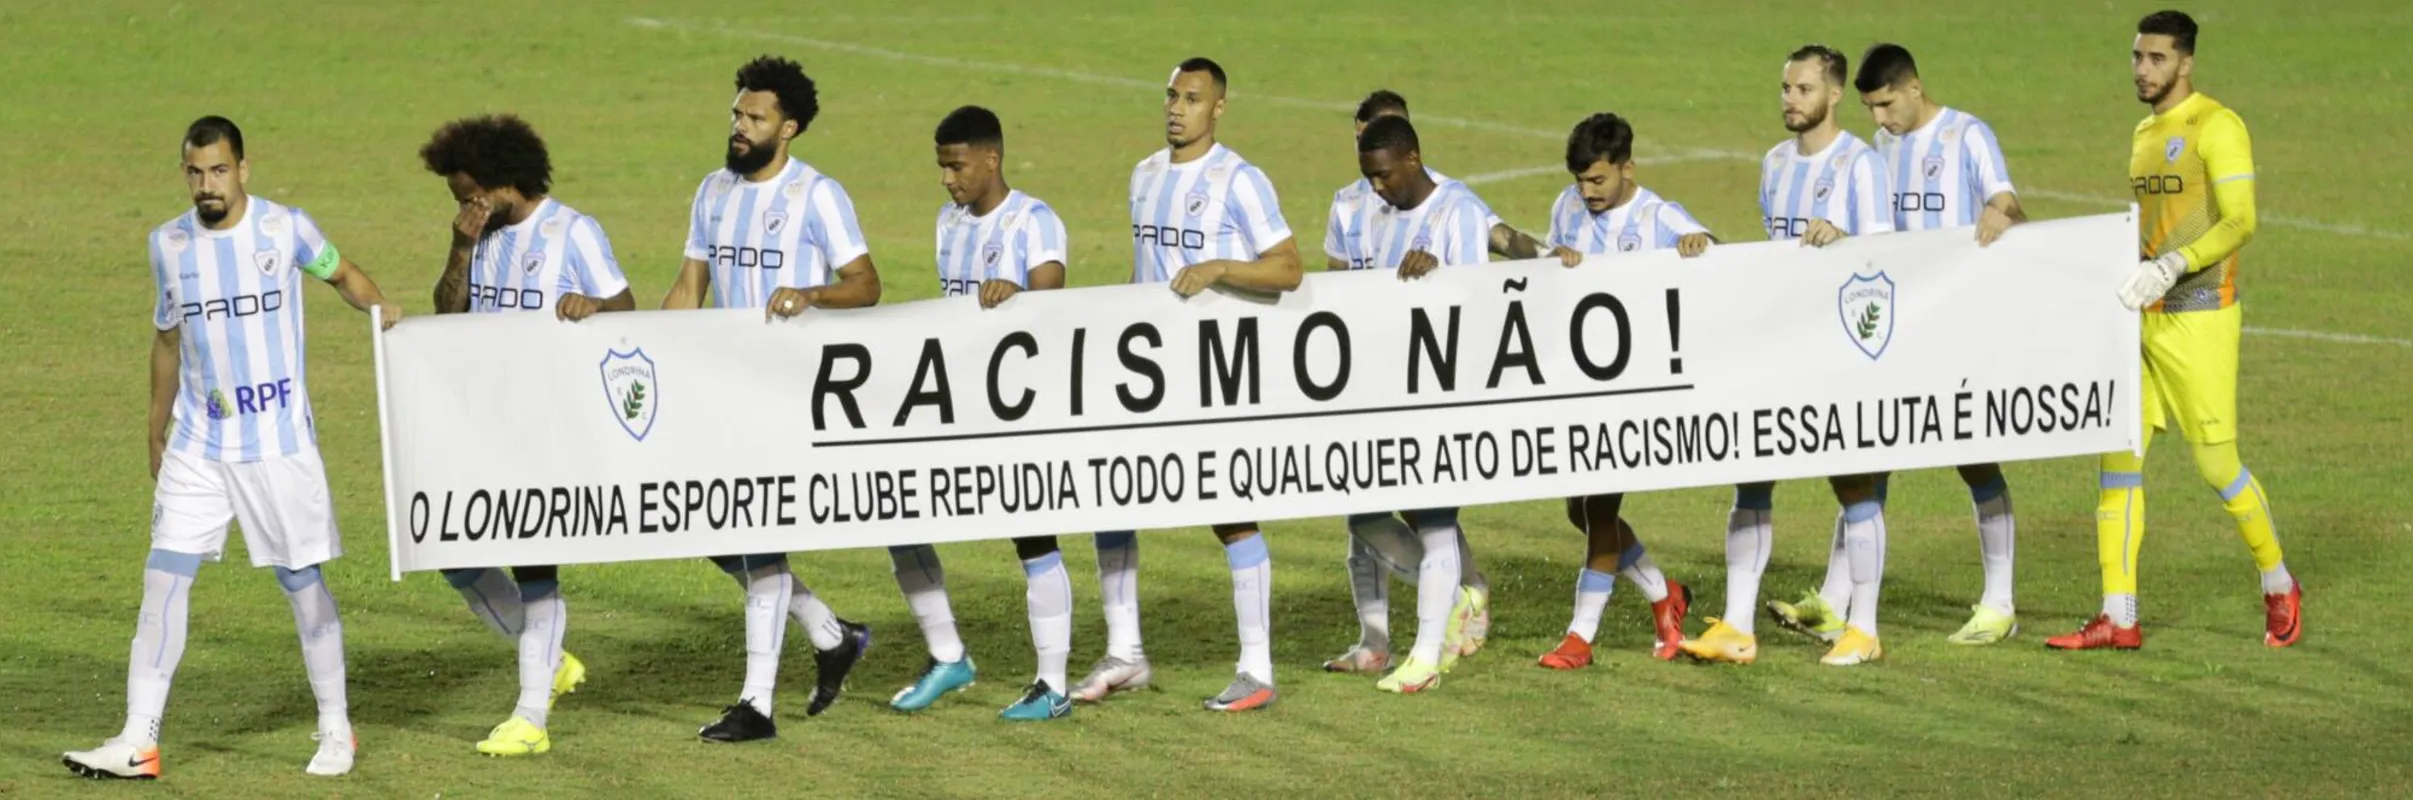 Jogadores do LEC entraram em campo contra o Coritiba, dia 1º, condenando atos de racismo